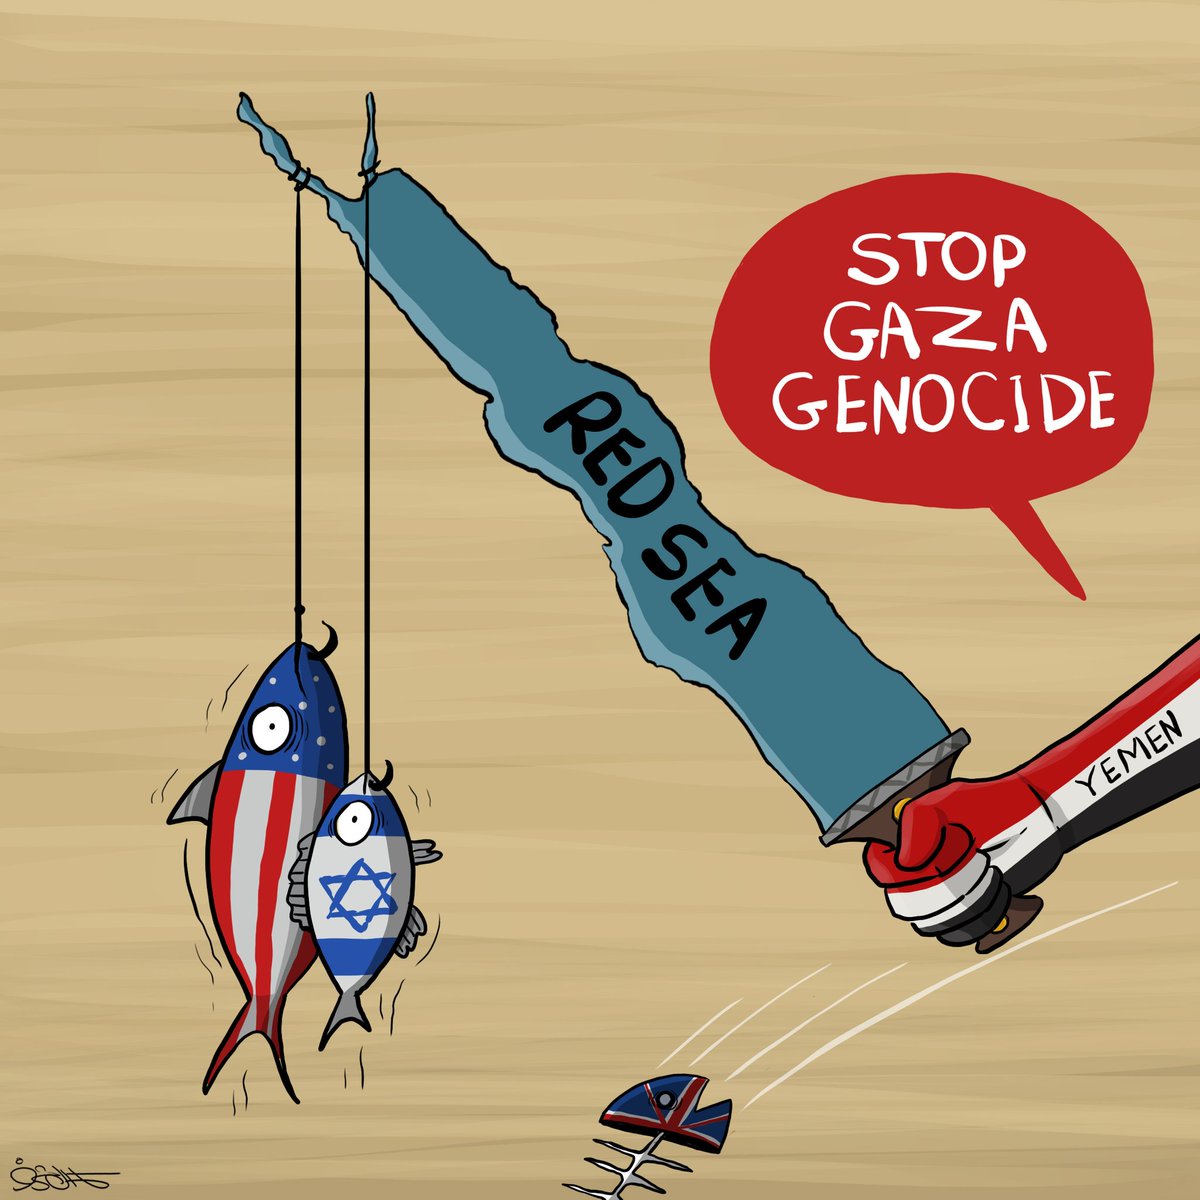 #StopGazaGenocide 
#RedSea 
#Yemen